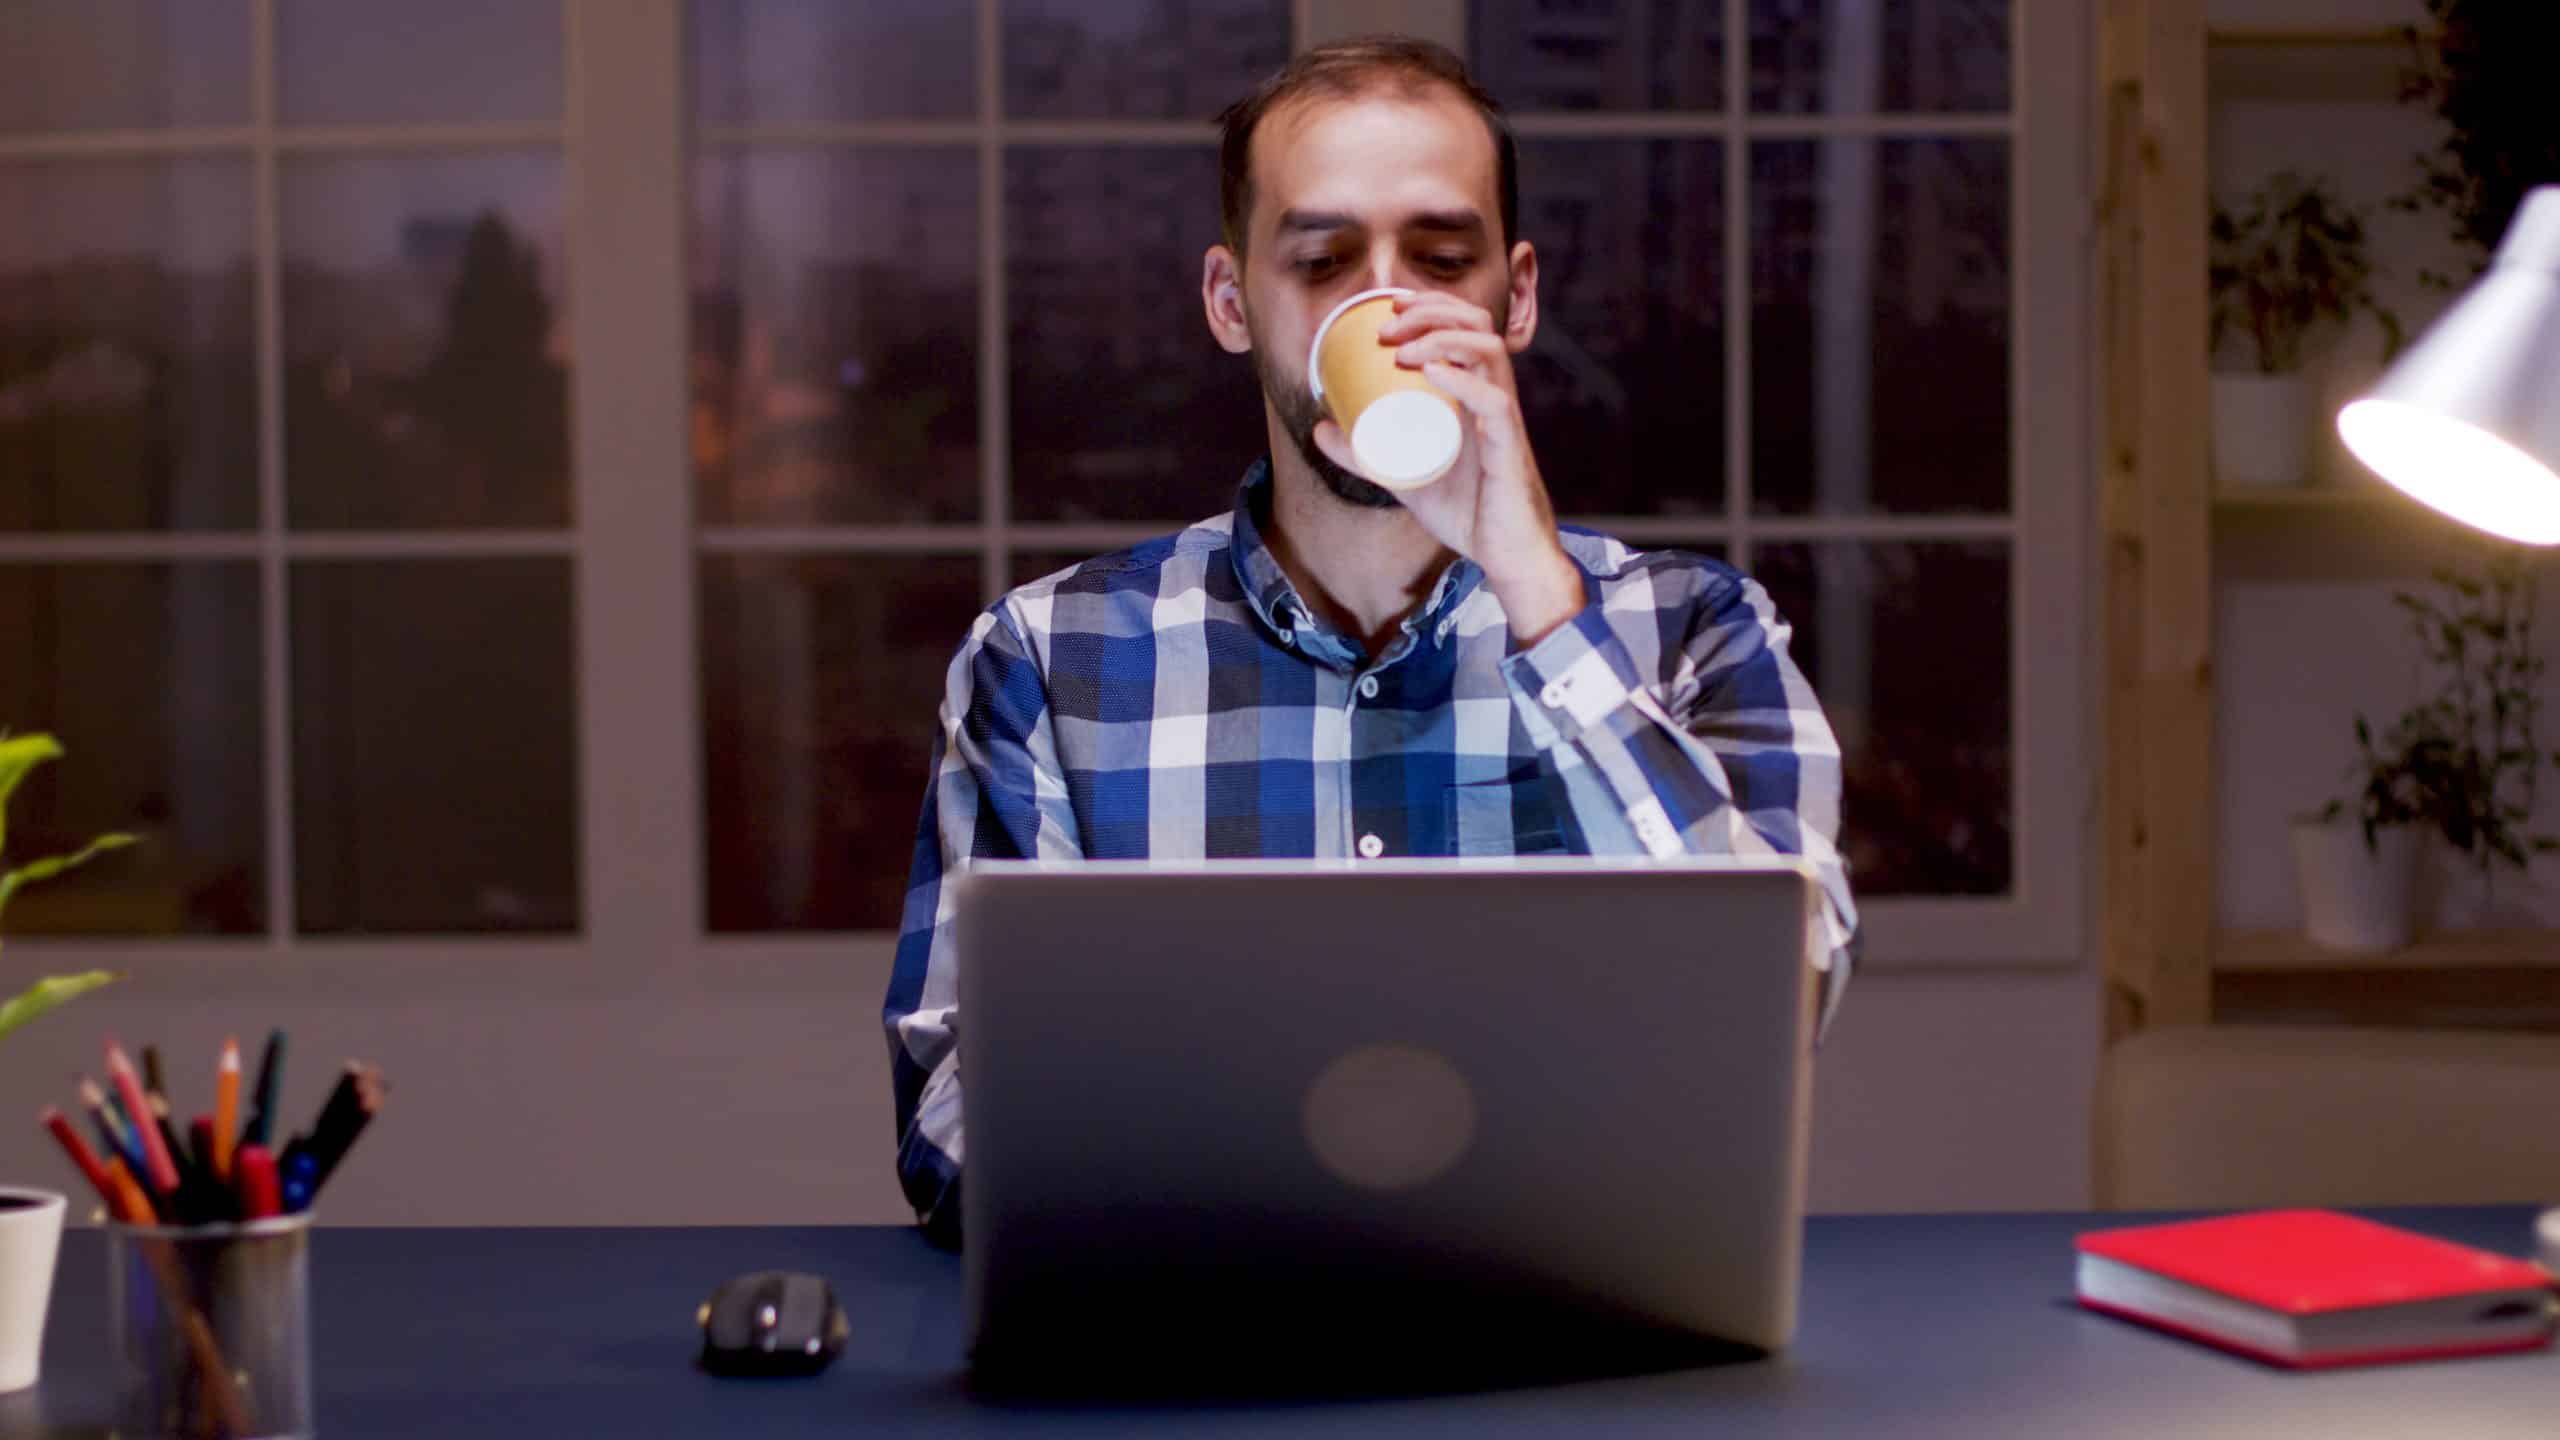 A imagem mostra um homem branco, desenvolvedor remoto, tomando café enquanto trabalha sentado à frente de um notebook